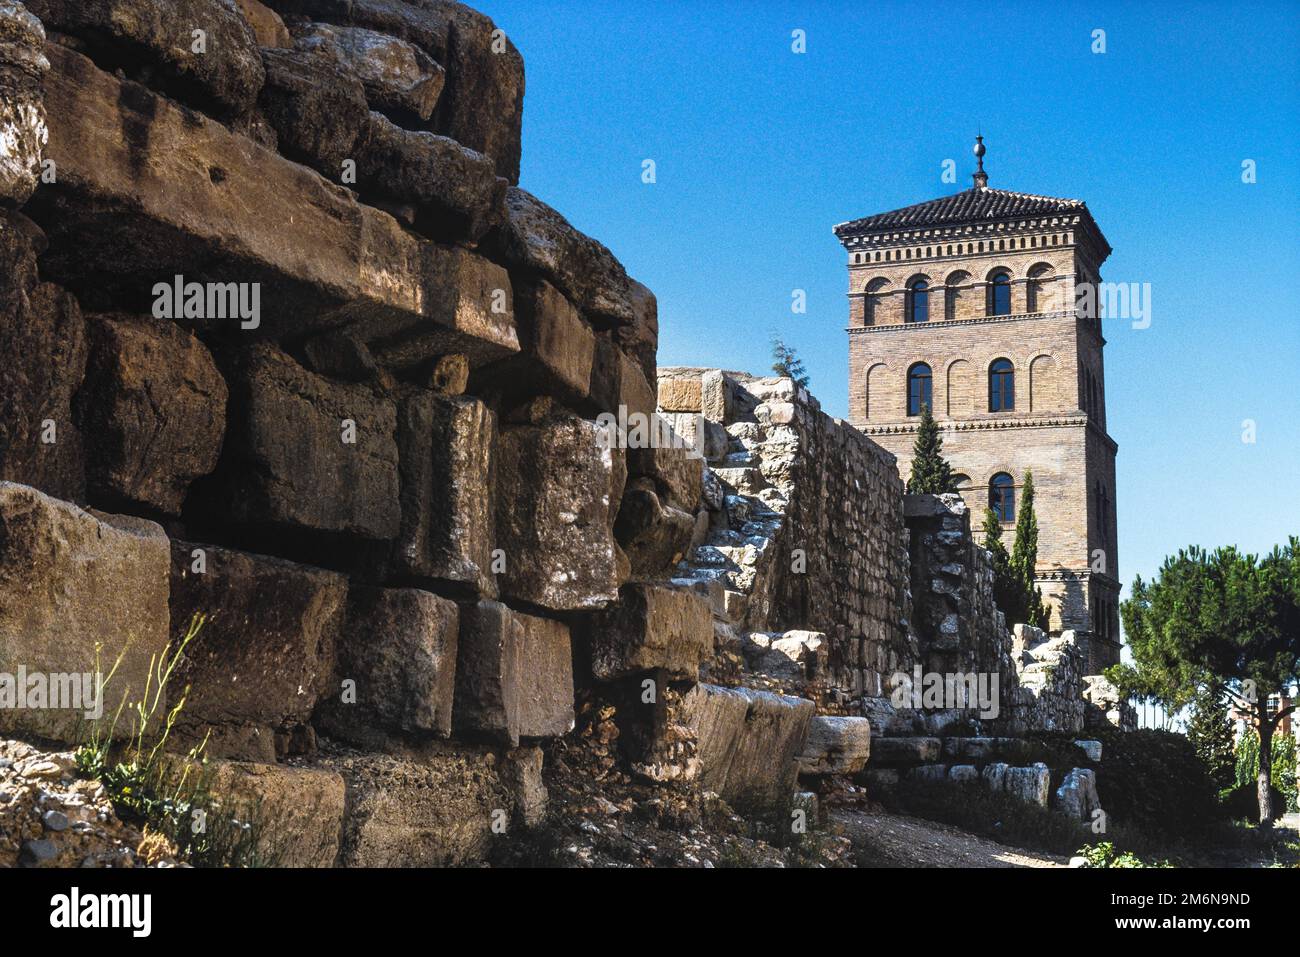 Römische Mauer Spanien, Blick im Sommer auf die Überreste eines Teils der römischen Mauer in Saragoza mit dem Zuda-Turm (Torreon de la Zuda) im Hintergrund. Stockfoto